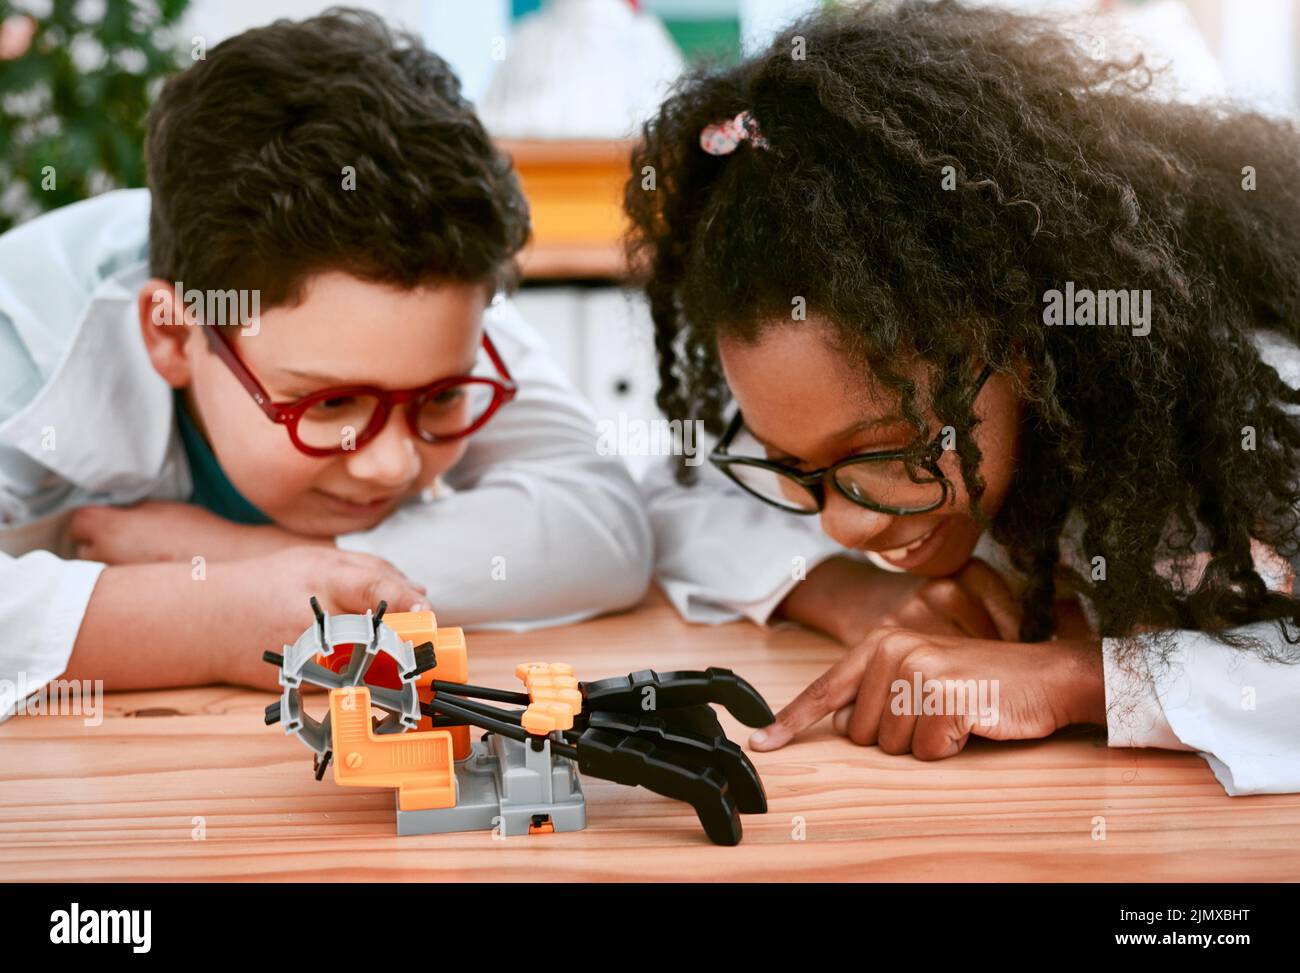 Mal sehen, ob es funktioniert. Ein entzückender kleiner Junge und ein Mädchen bauen einen Roboter in der Wissenschaft Klasse in der Schule. Stockfoto